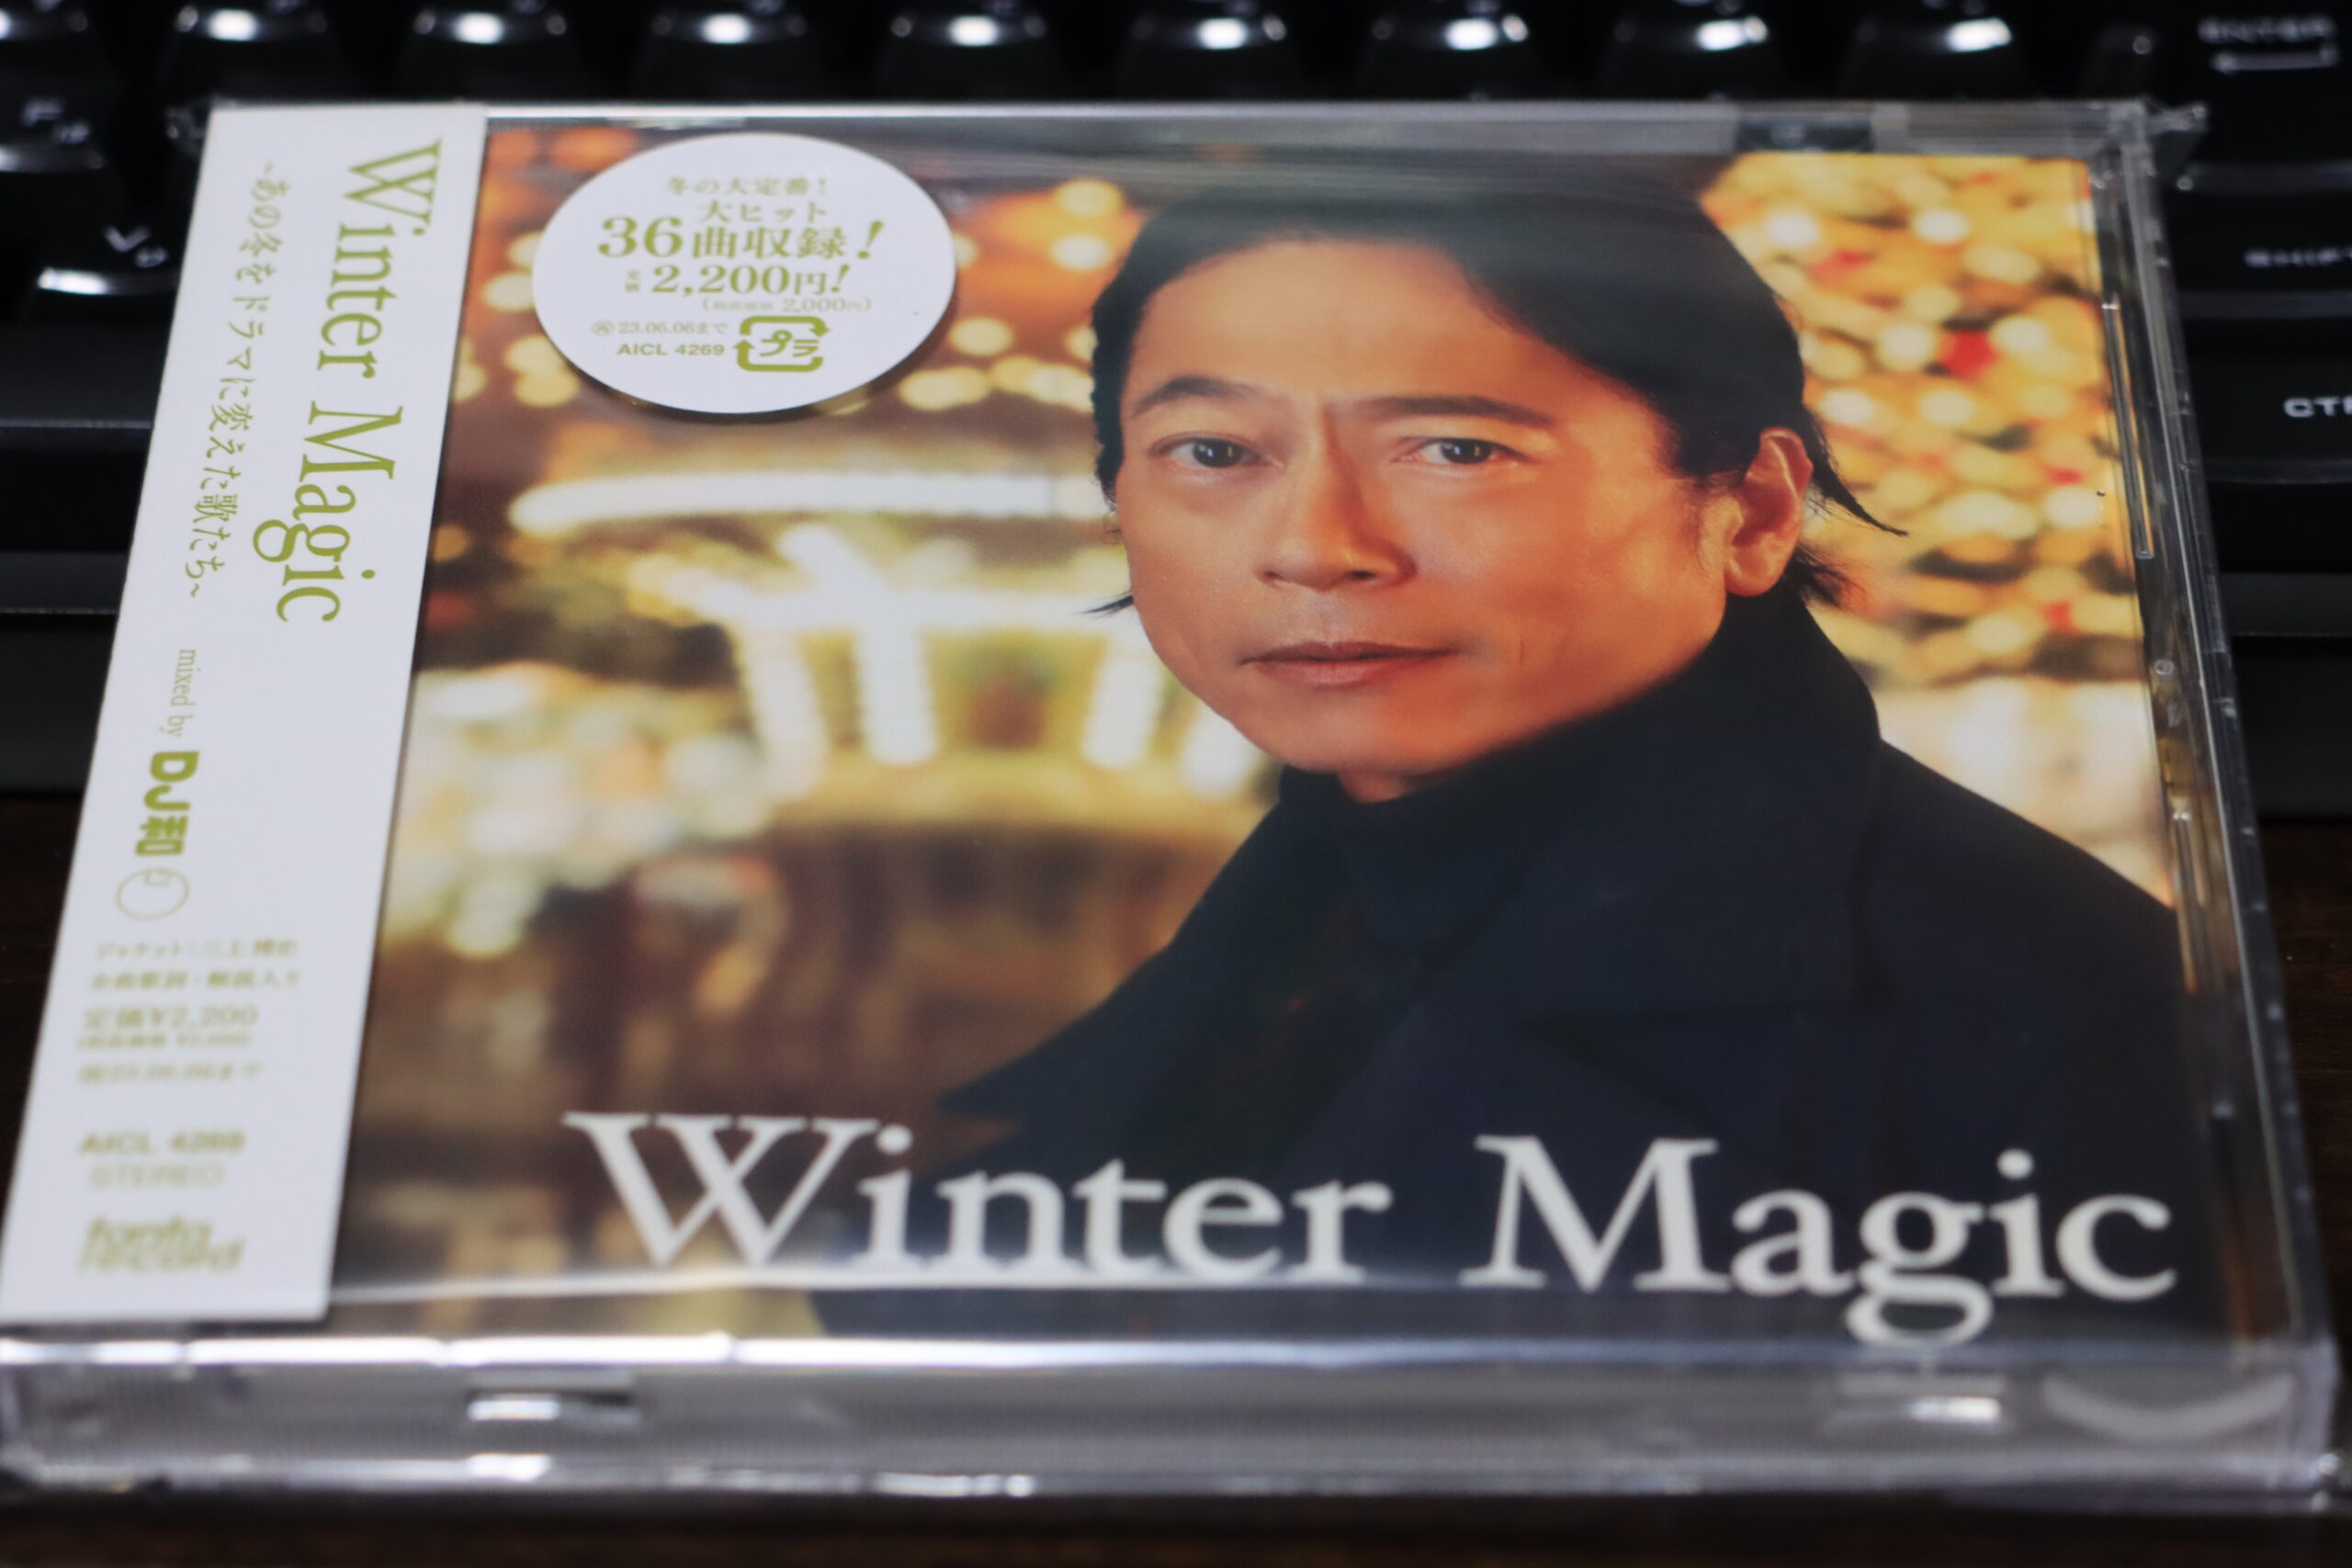 作業用にピッタリな冬CD　『Winter Magic ~あの冬をドラマに変えた歌たち~ mixed by DJ和』